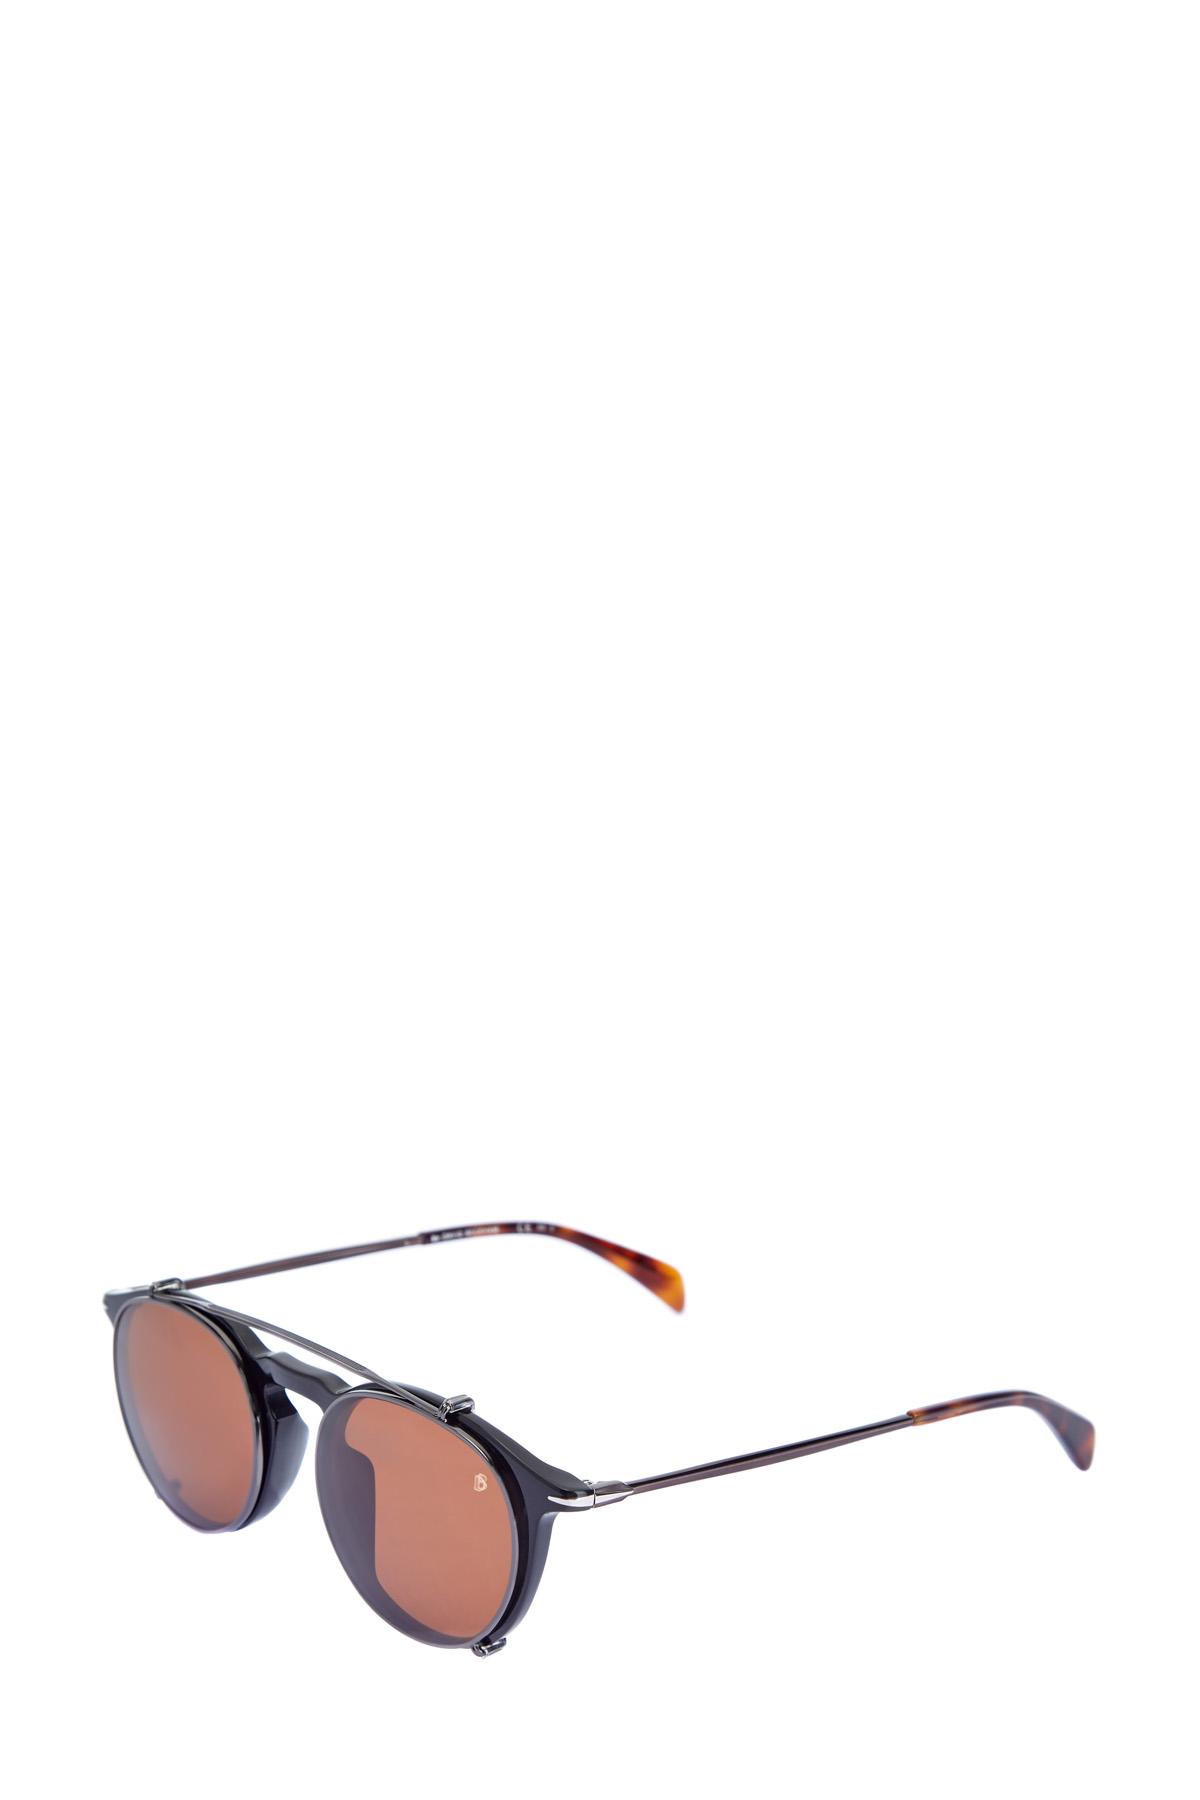 Очки с фирменными клипсами и рутениевым напылением DAVID BECKHAM, цвет коричневый, размер 40 - фото 2